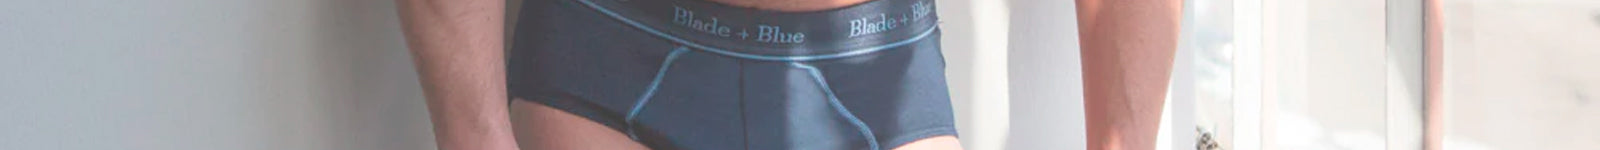 Men's underwear made in usa